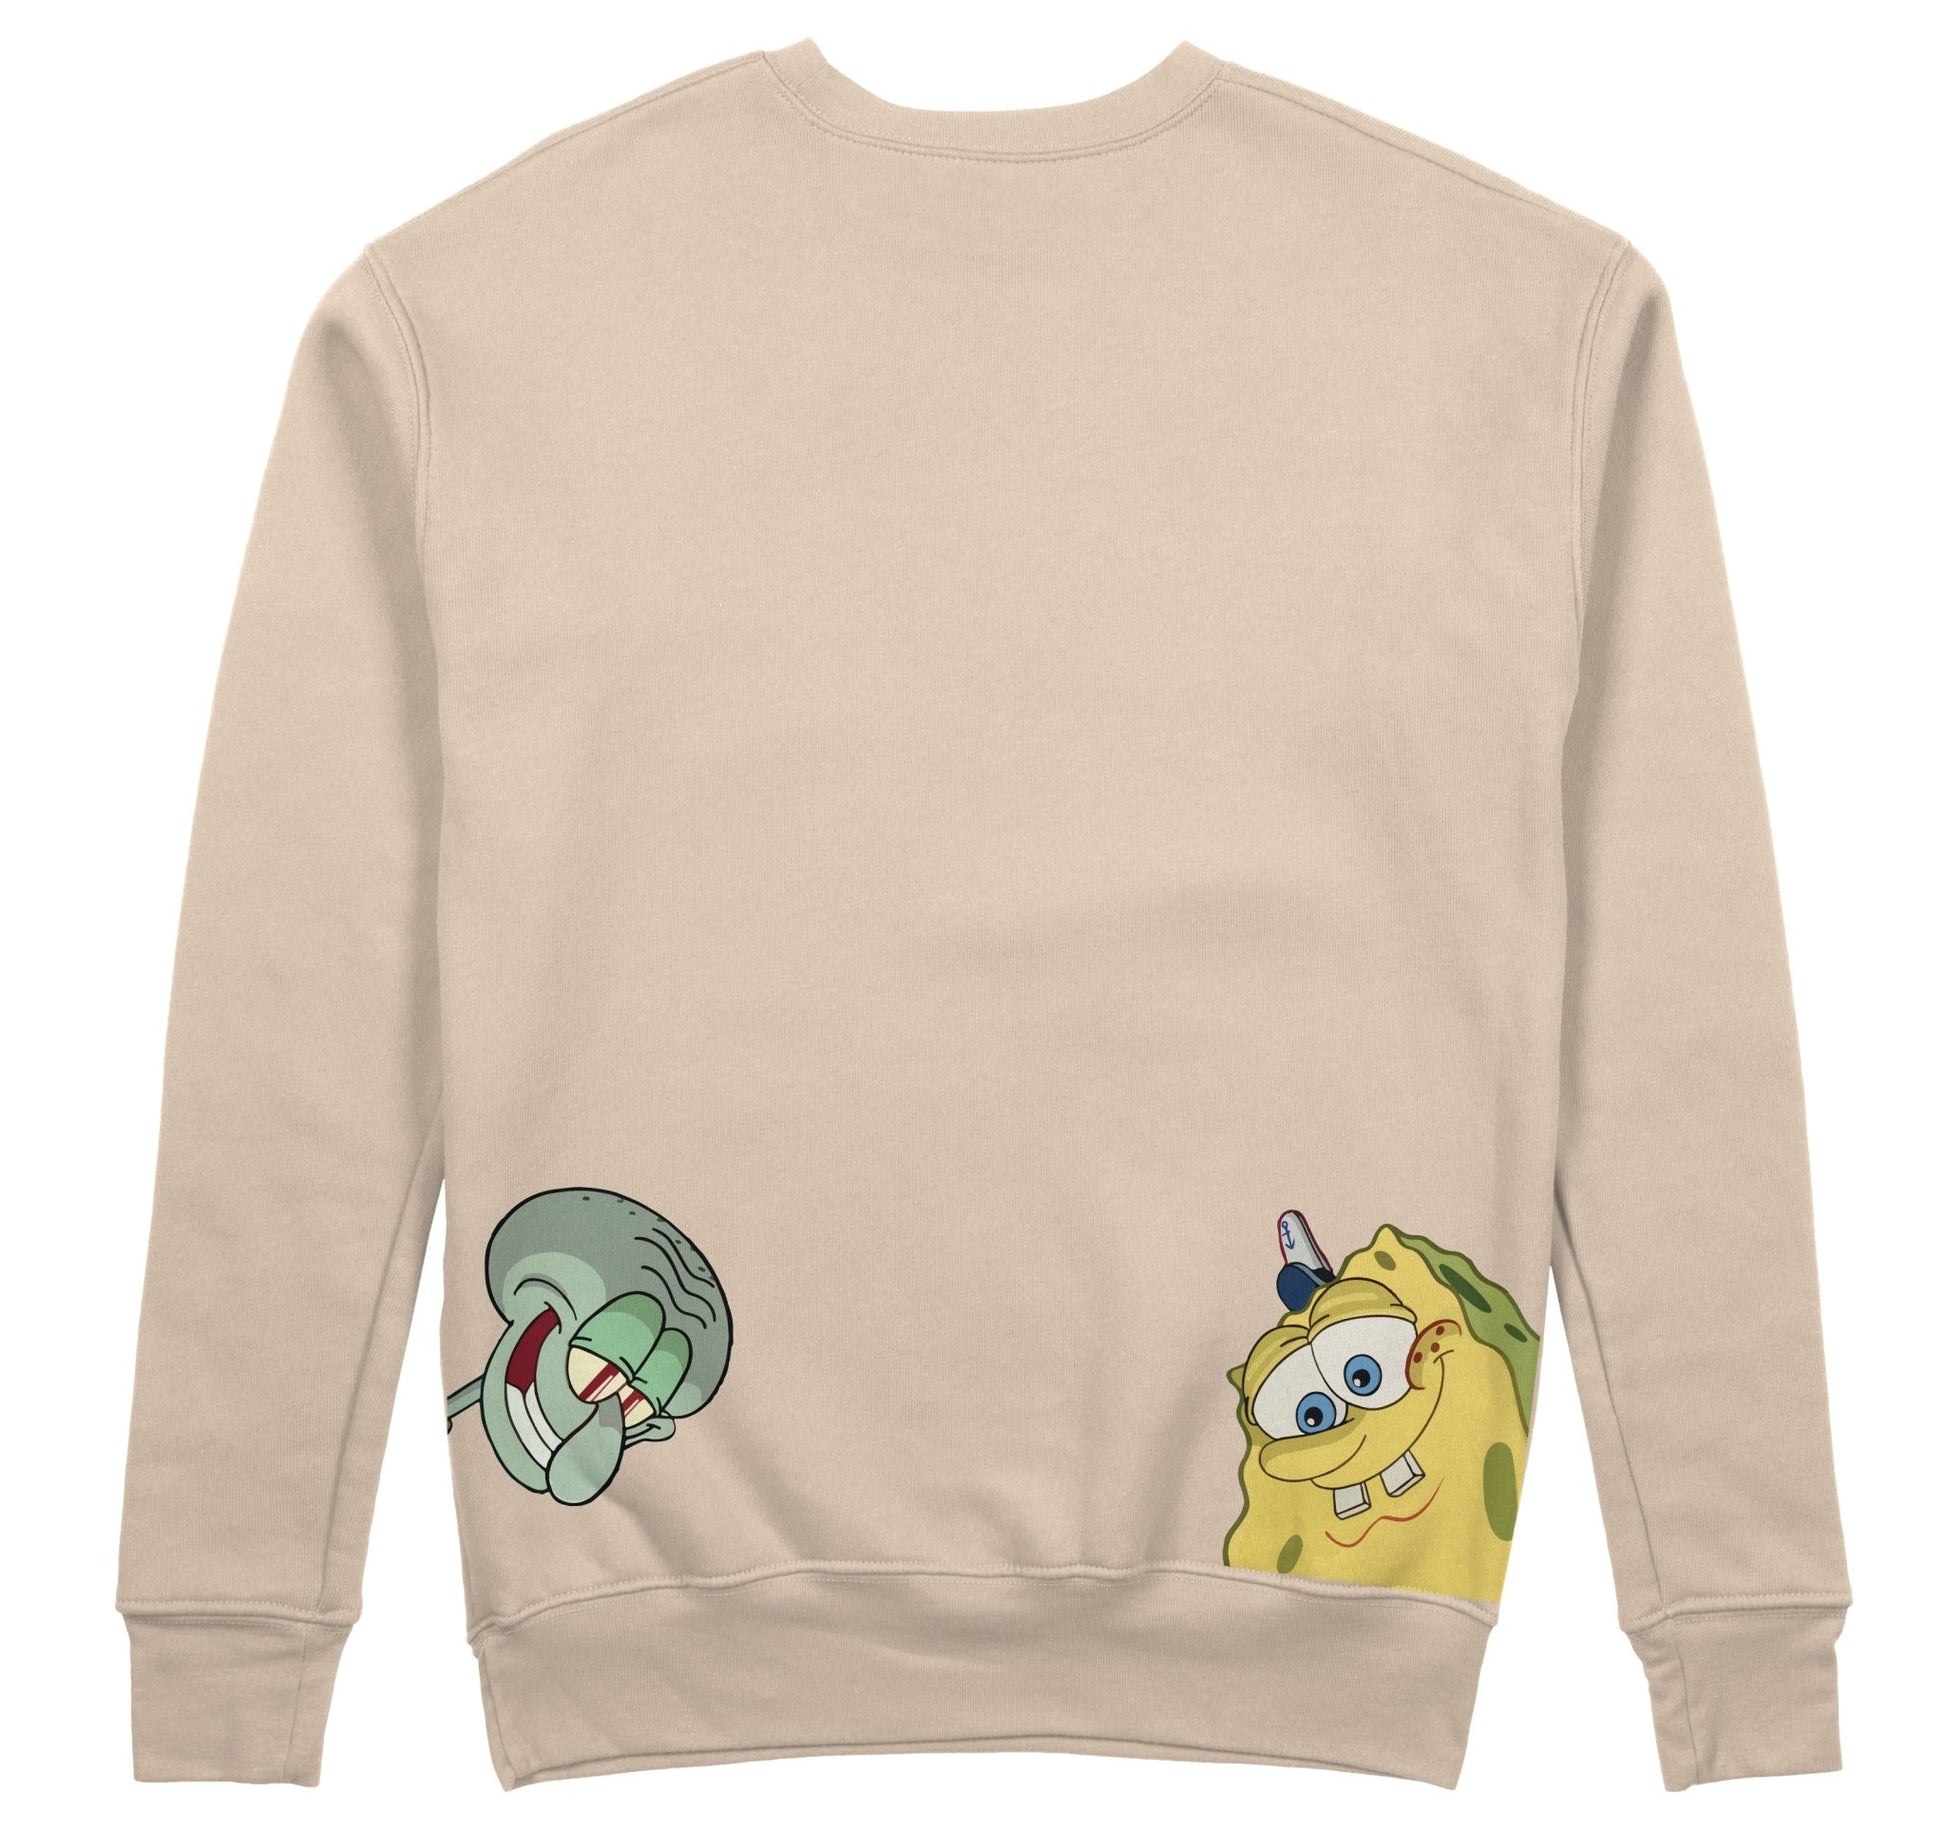 Sponge Bob - Sweatshirt - Candlemas Store